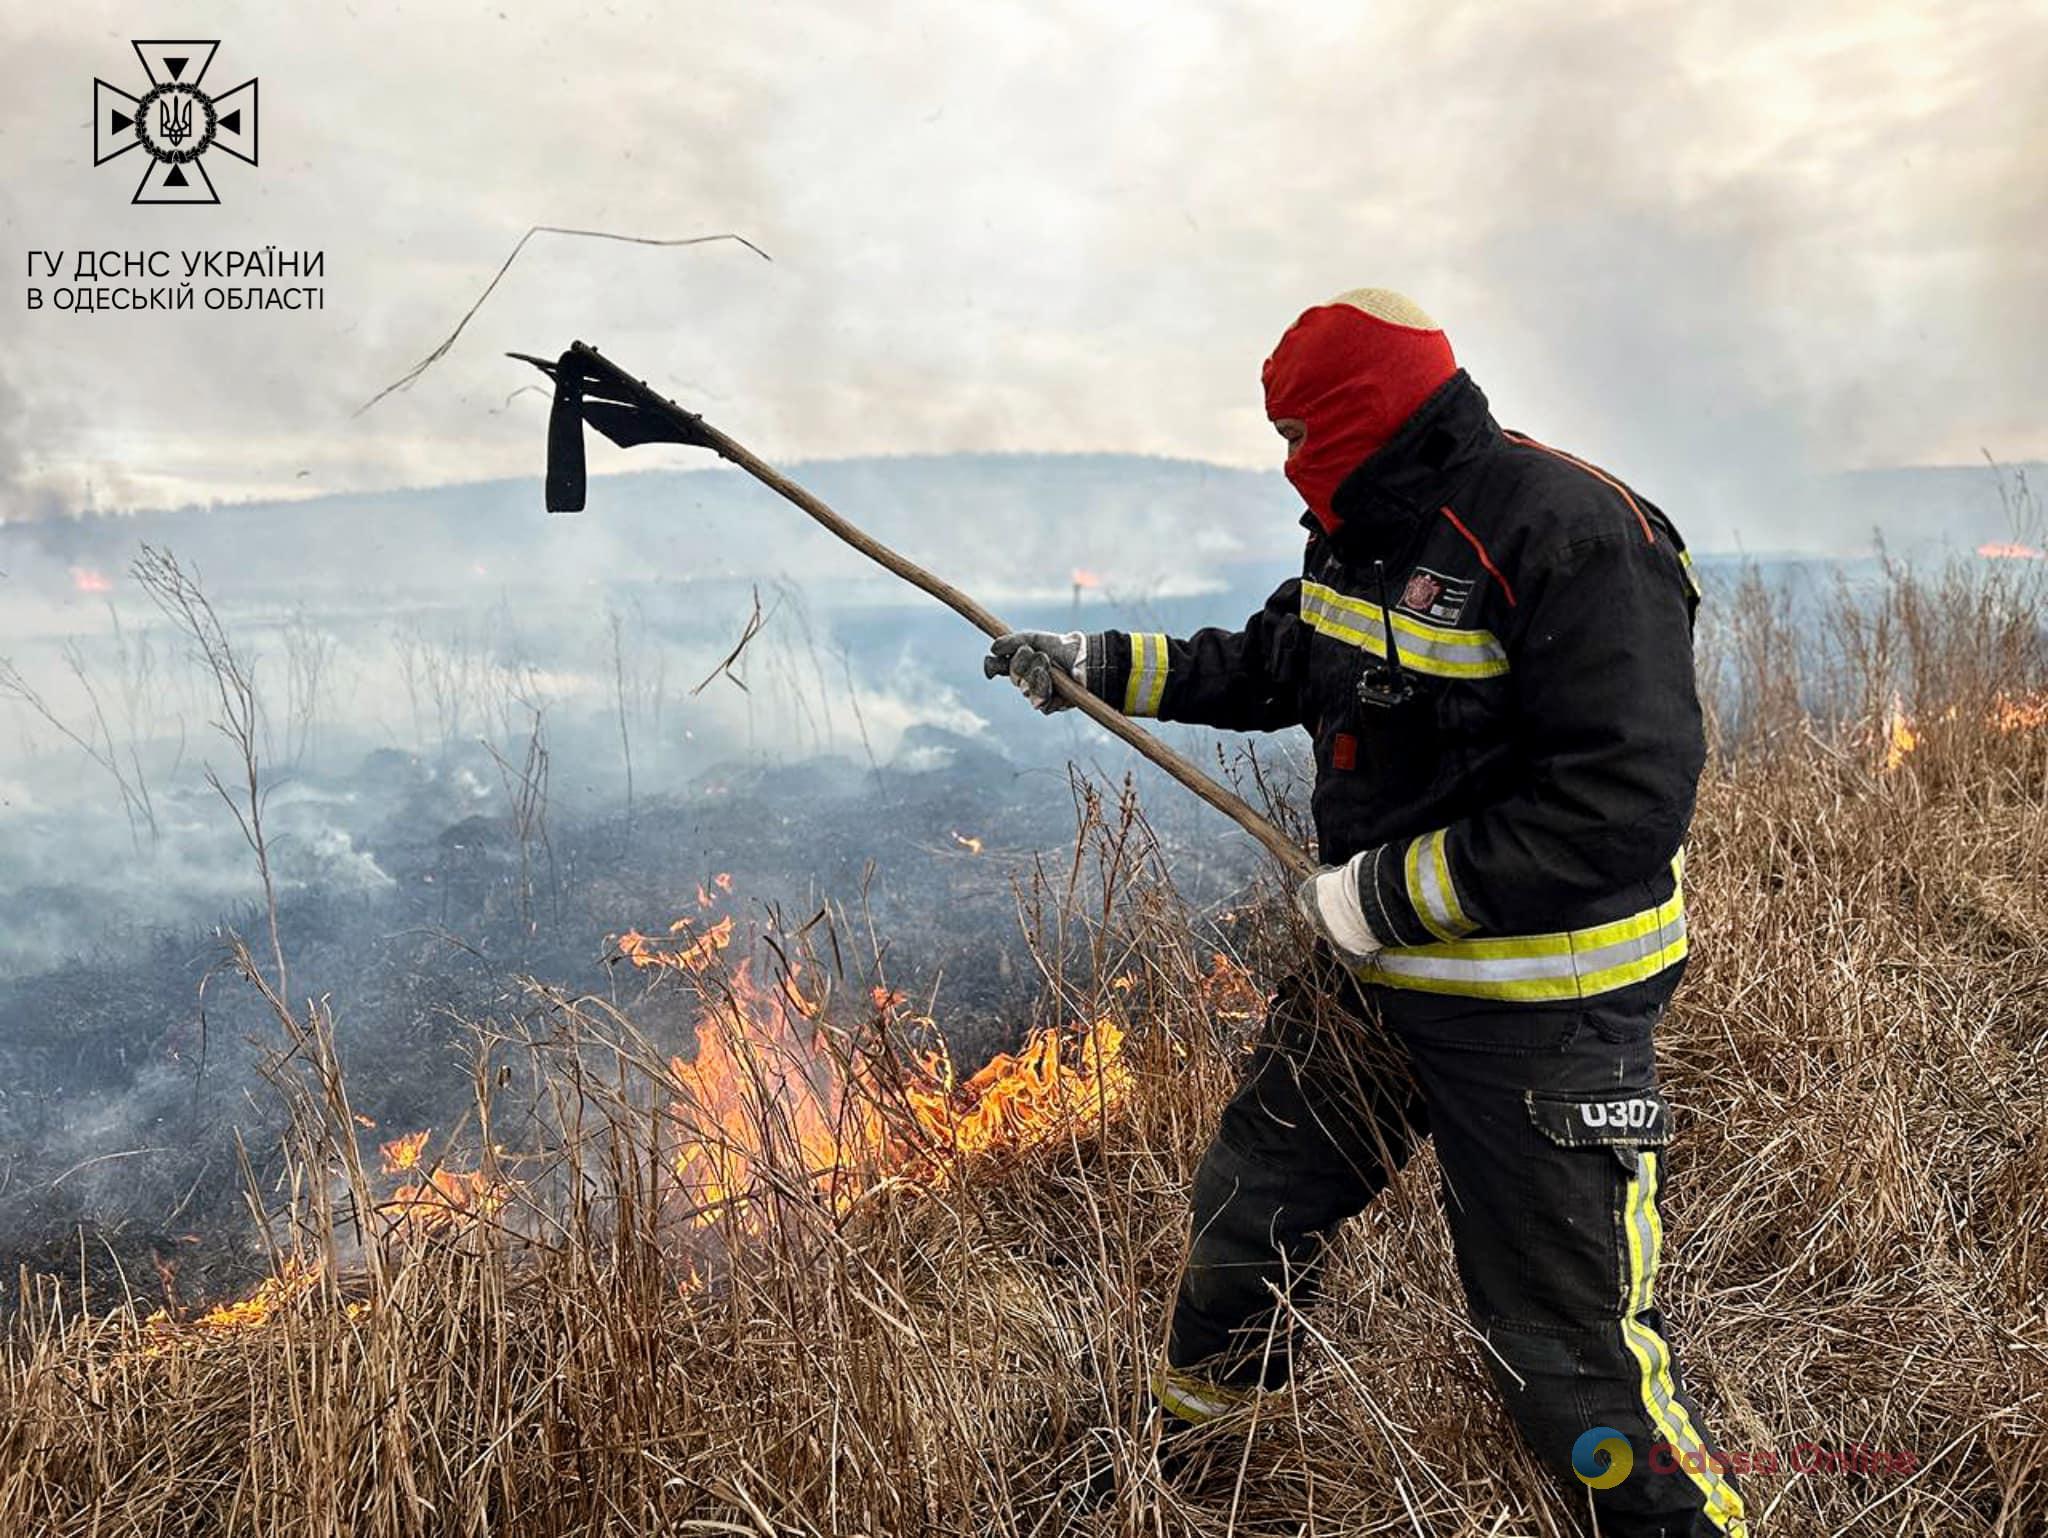 Масштабный пожар в Одесской области: в Березовском районе горит камыш и сухая трава (фото)